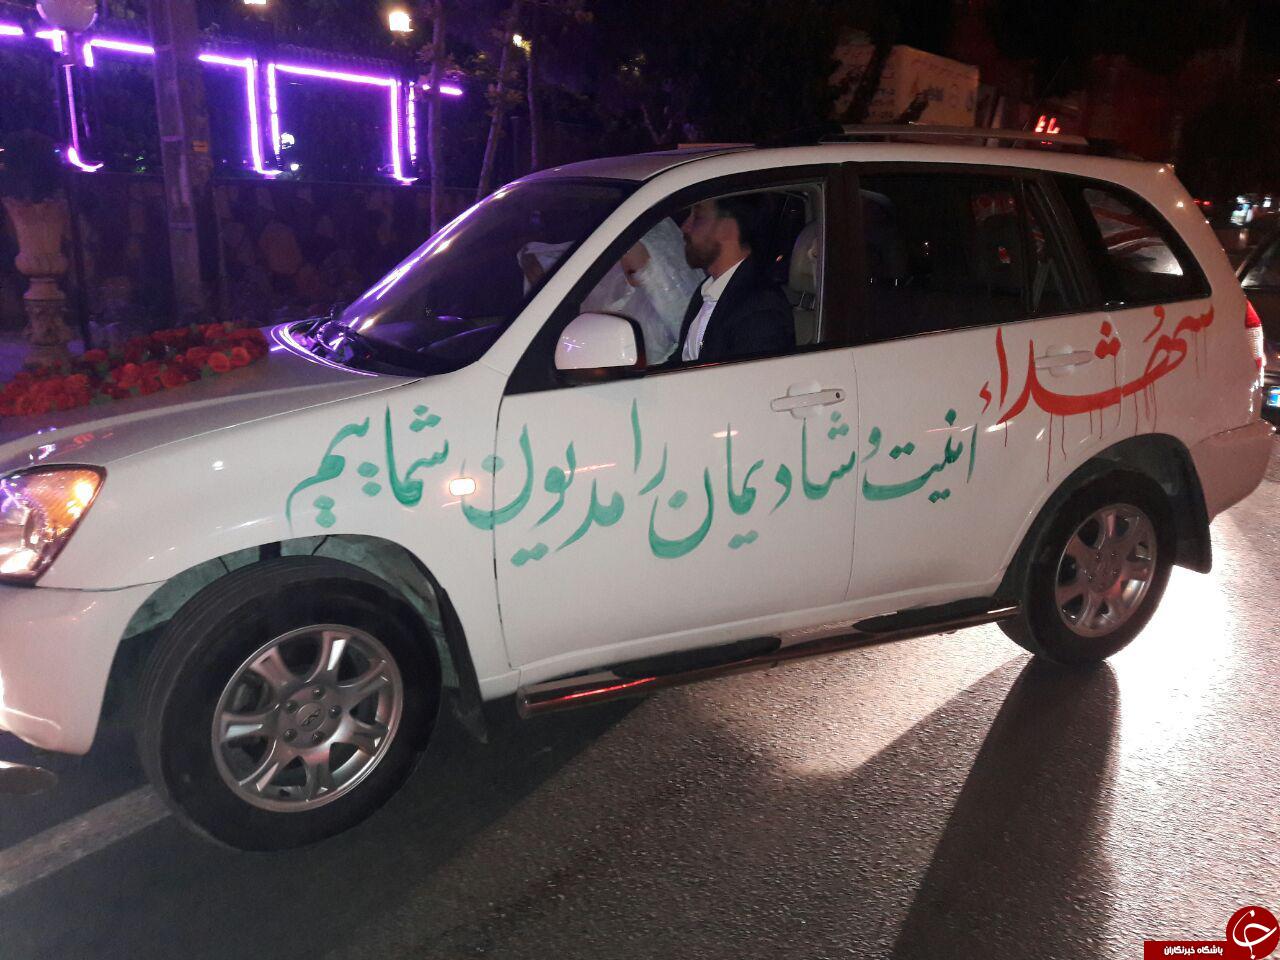 ماشین عروسی به عکس شهدای مدافع حرم مزیّن شد + تصاویر